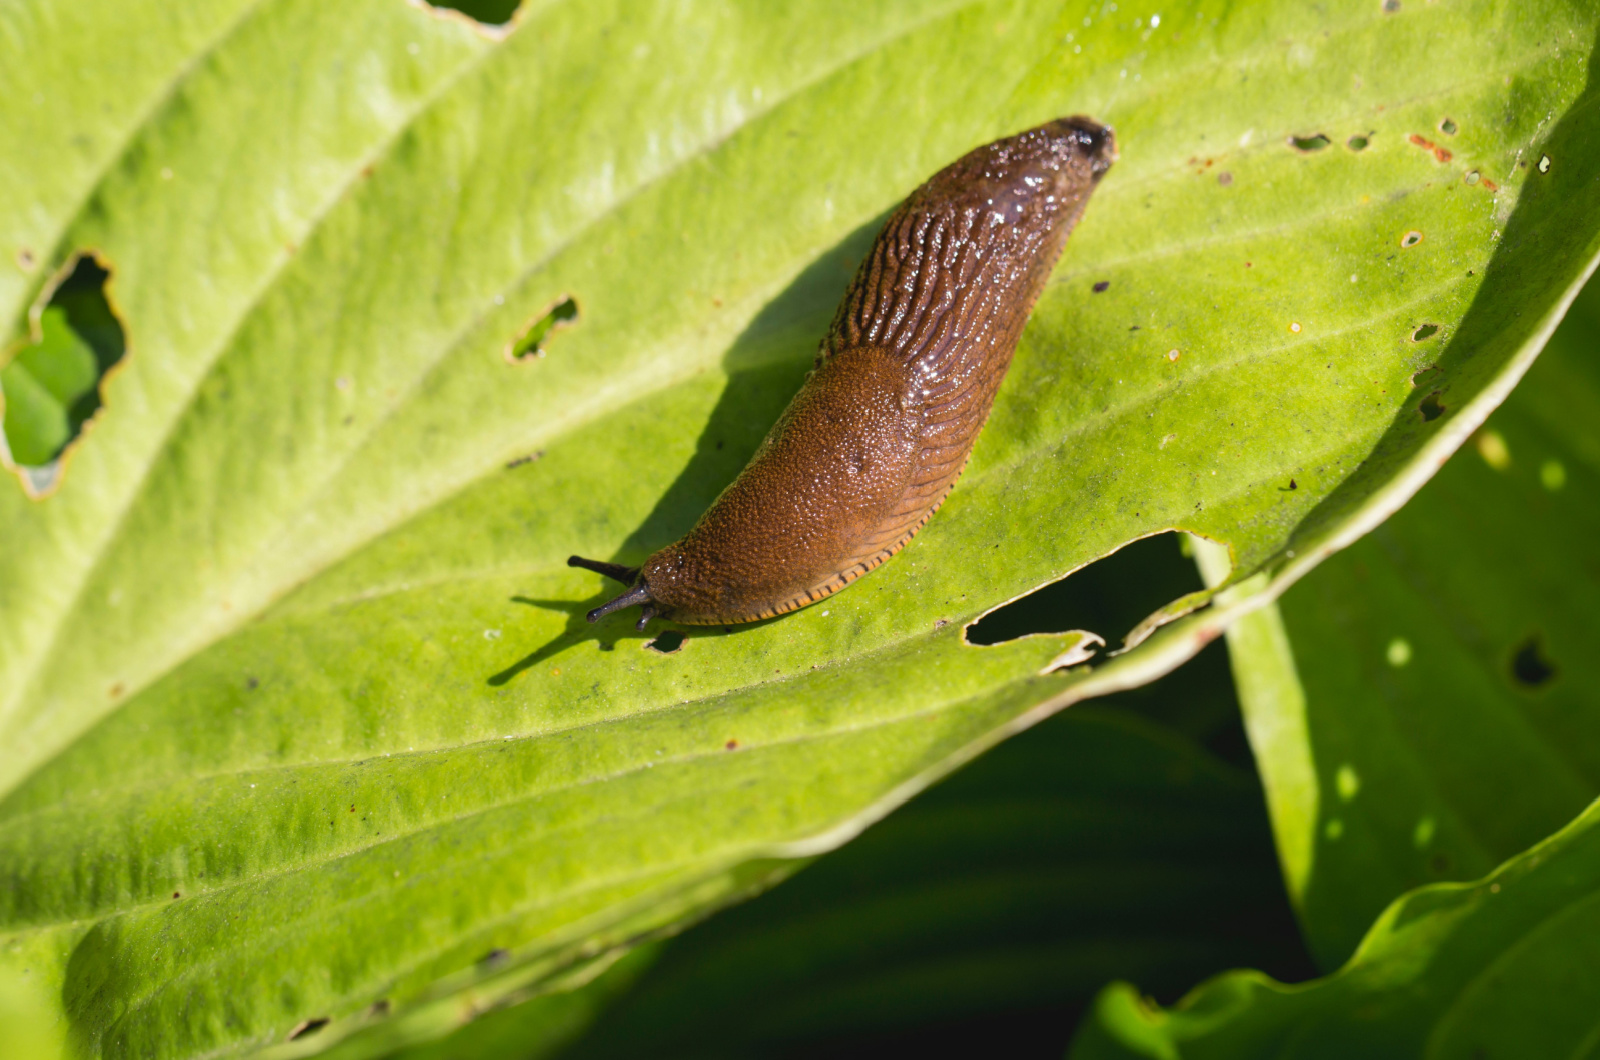 Slug on the leaf